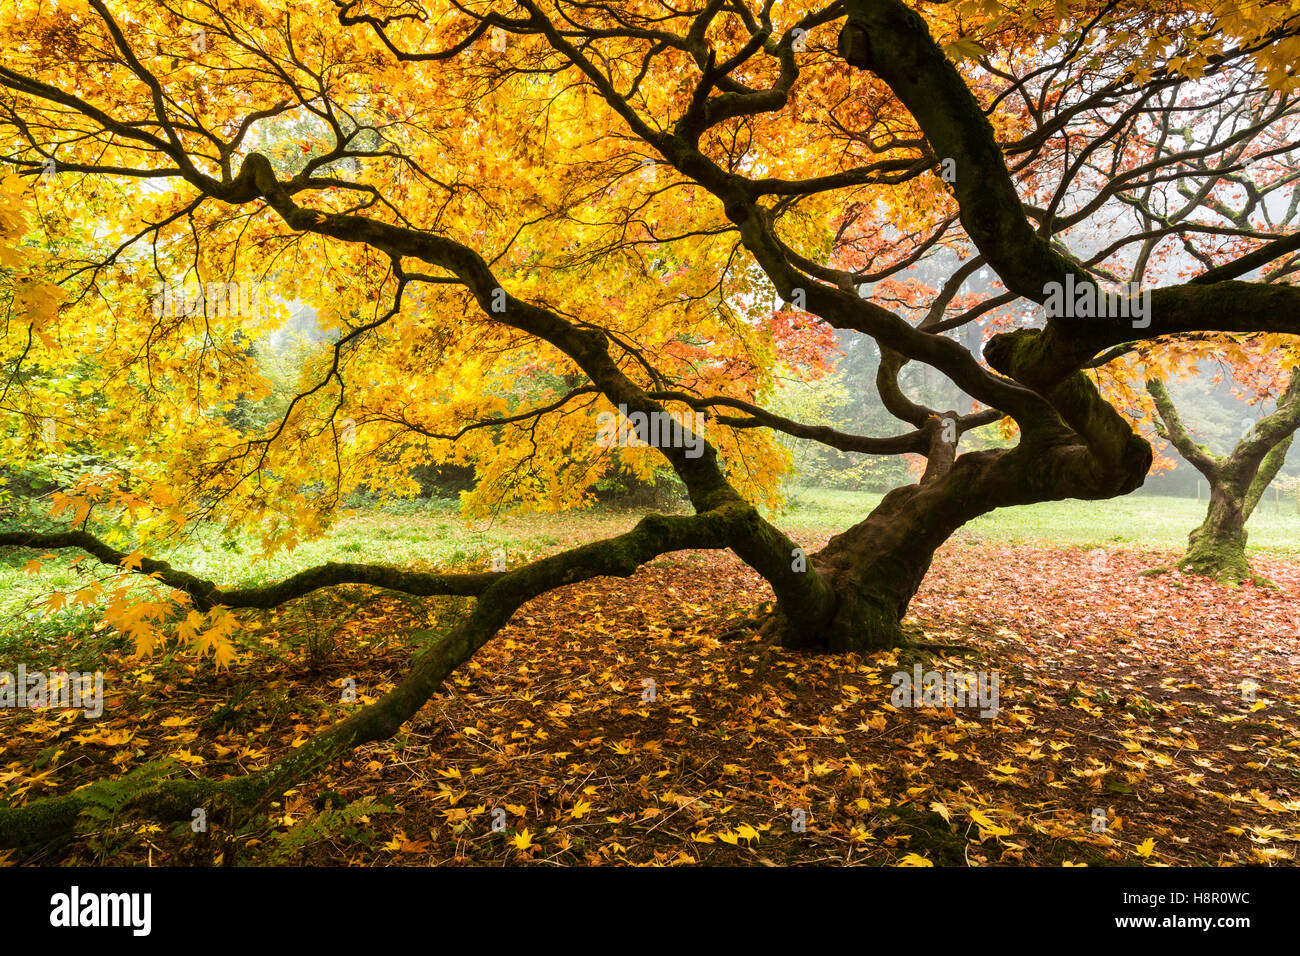 Ahornbaum im Herbst Nebel mit einer knubbeligen aussehen und lebhaft gelbe Blätter. Stockfoto